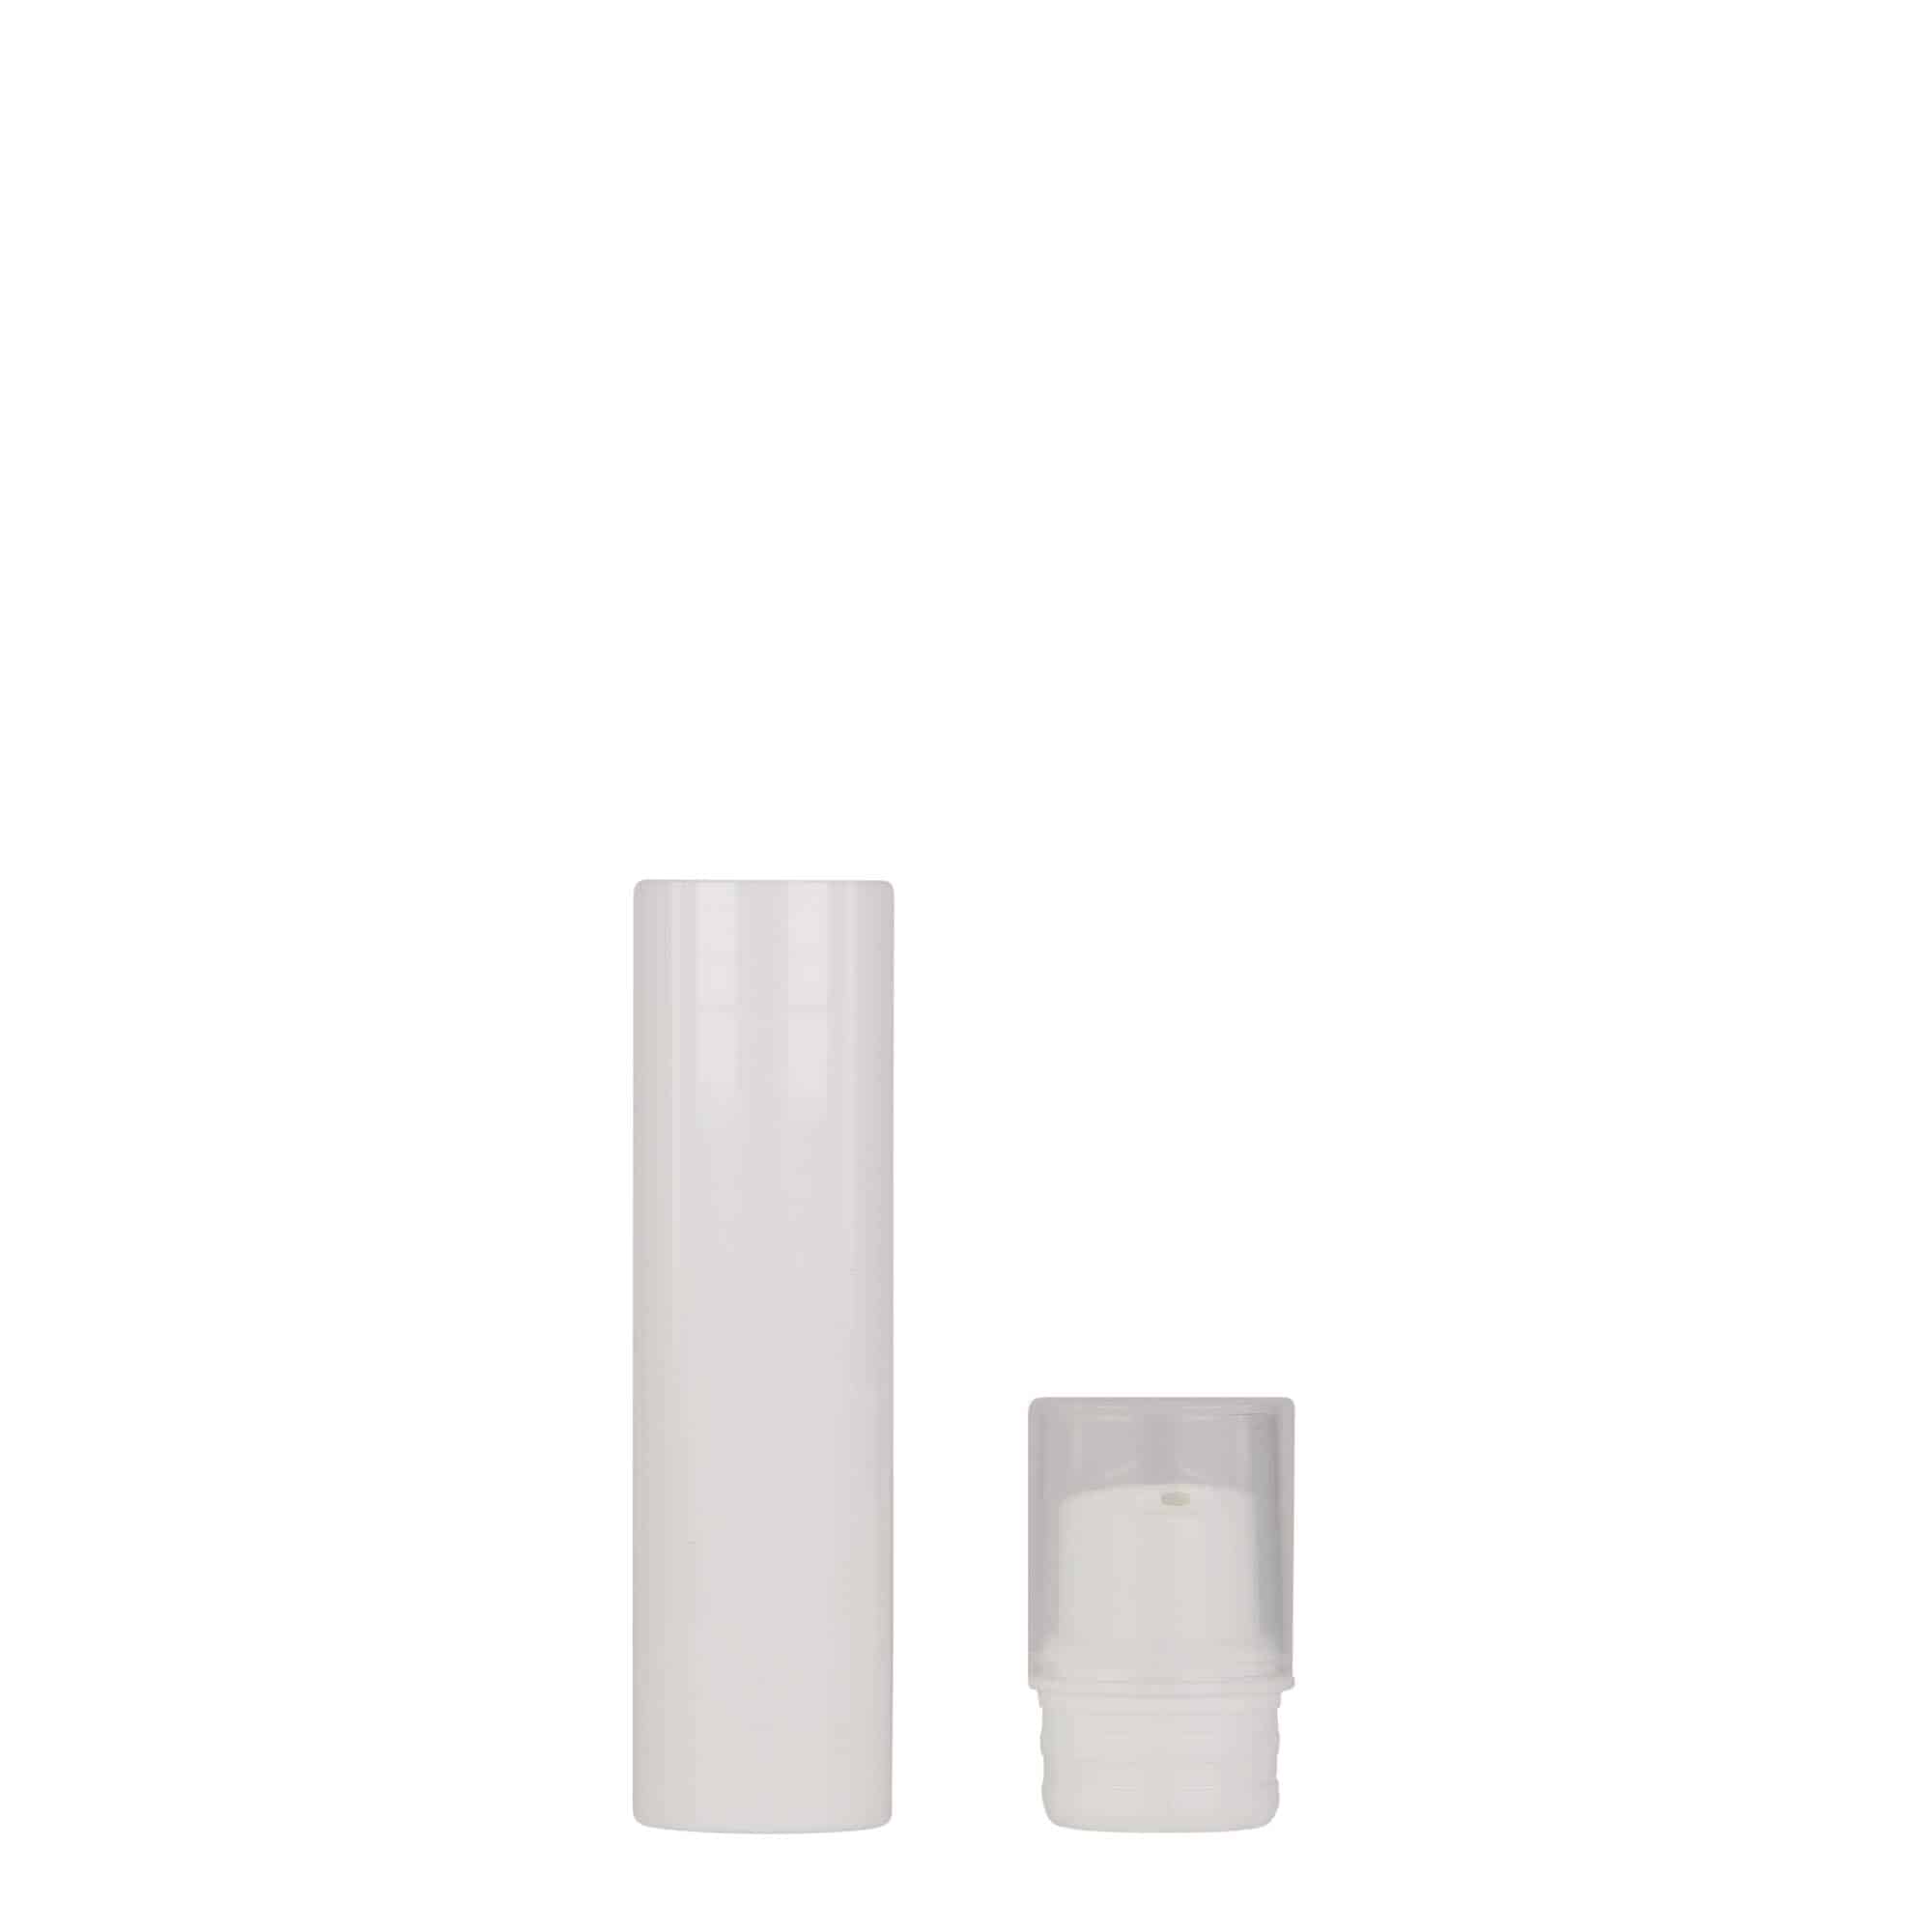 Bezvzduchový dávkovač 15 ml 'Nano', plast PP, bílý